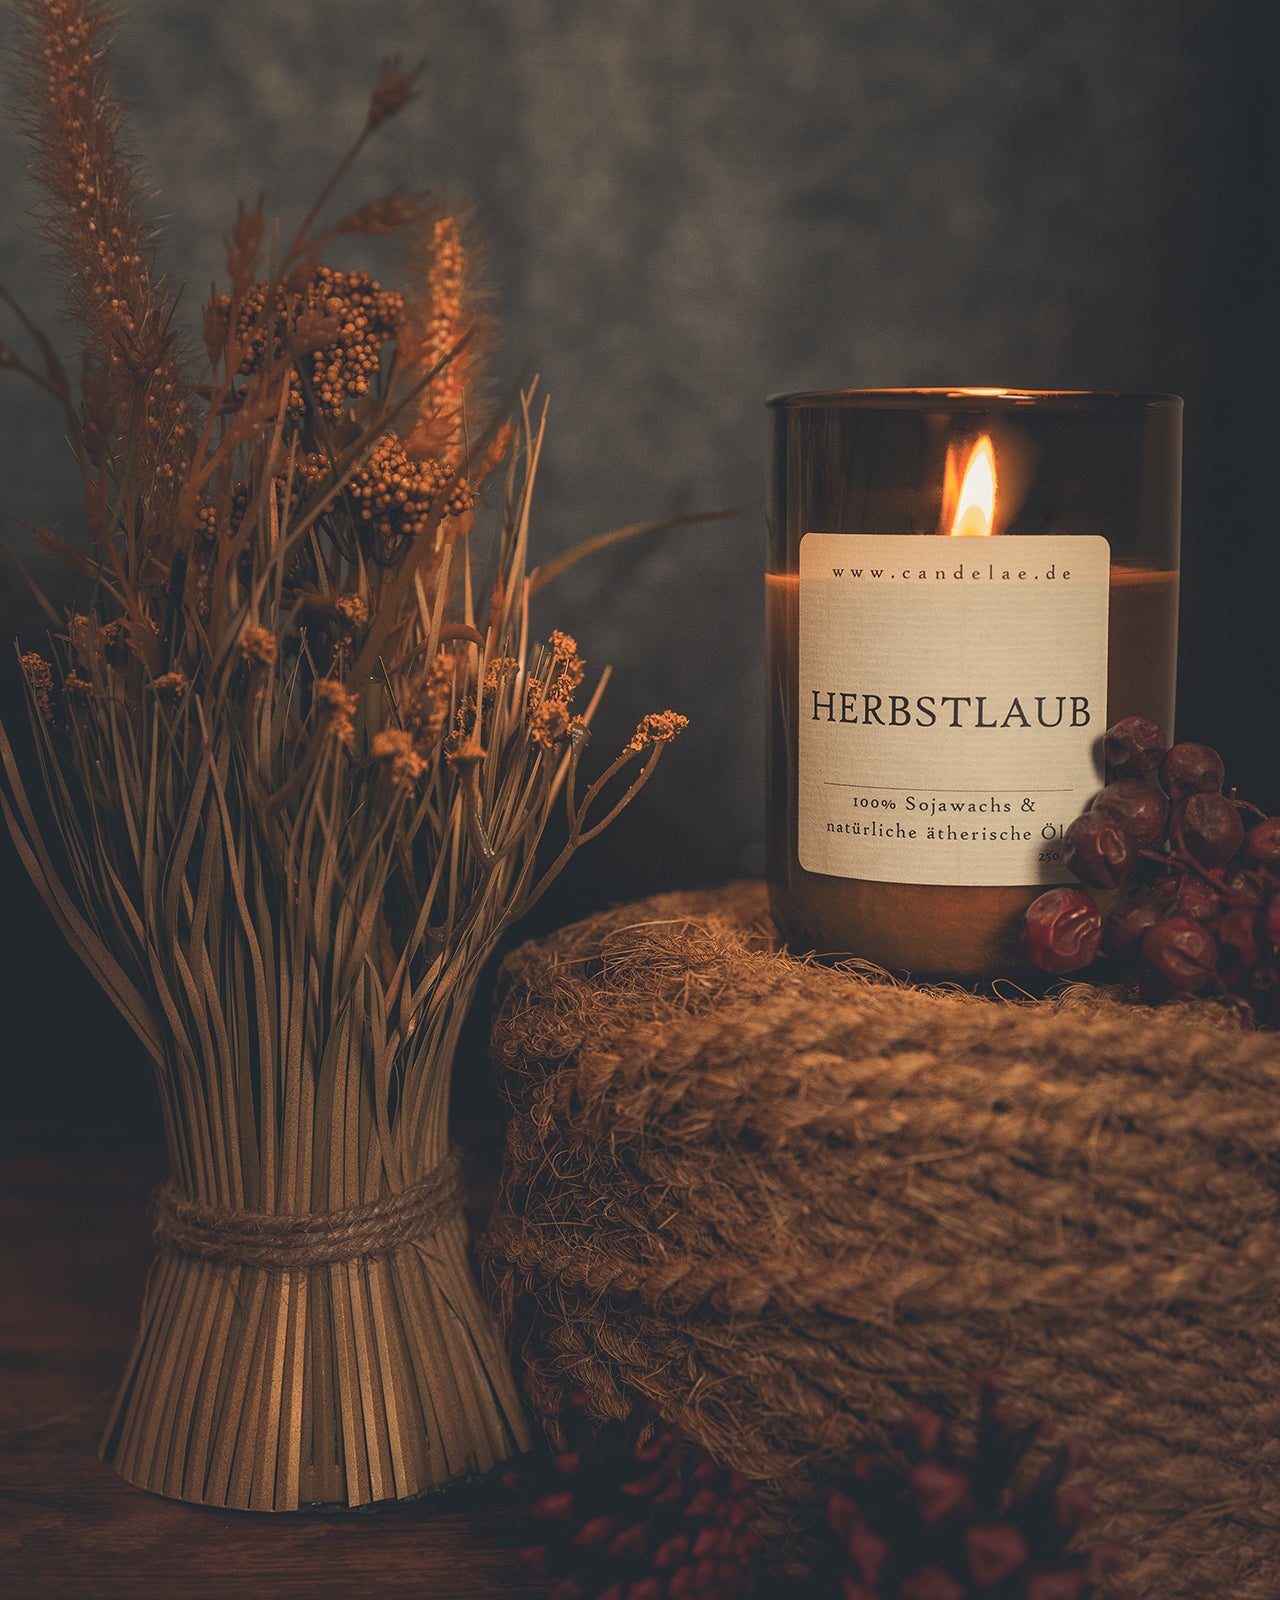 Duftkerze 'Herbstlaub' von Candelae: eine brennende Kerze, deren Flamme den warmen, goldenen Farbton von fallenden Herbstblättern widerspiegelt.